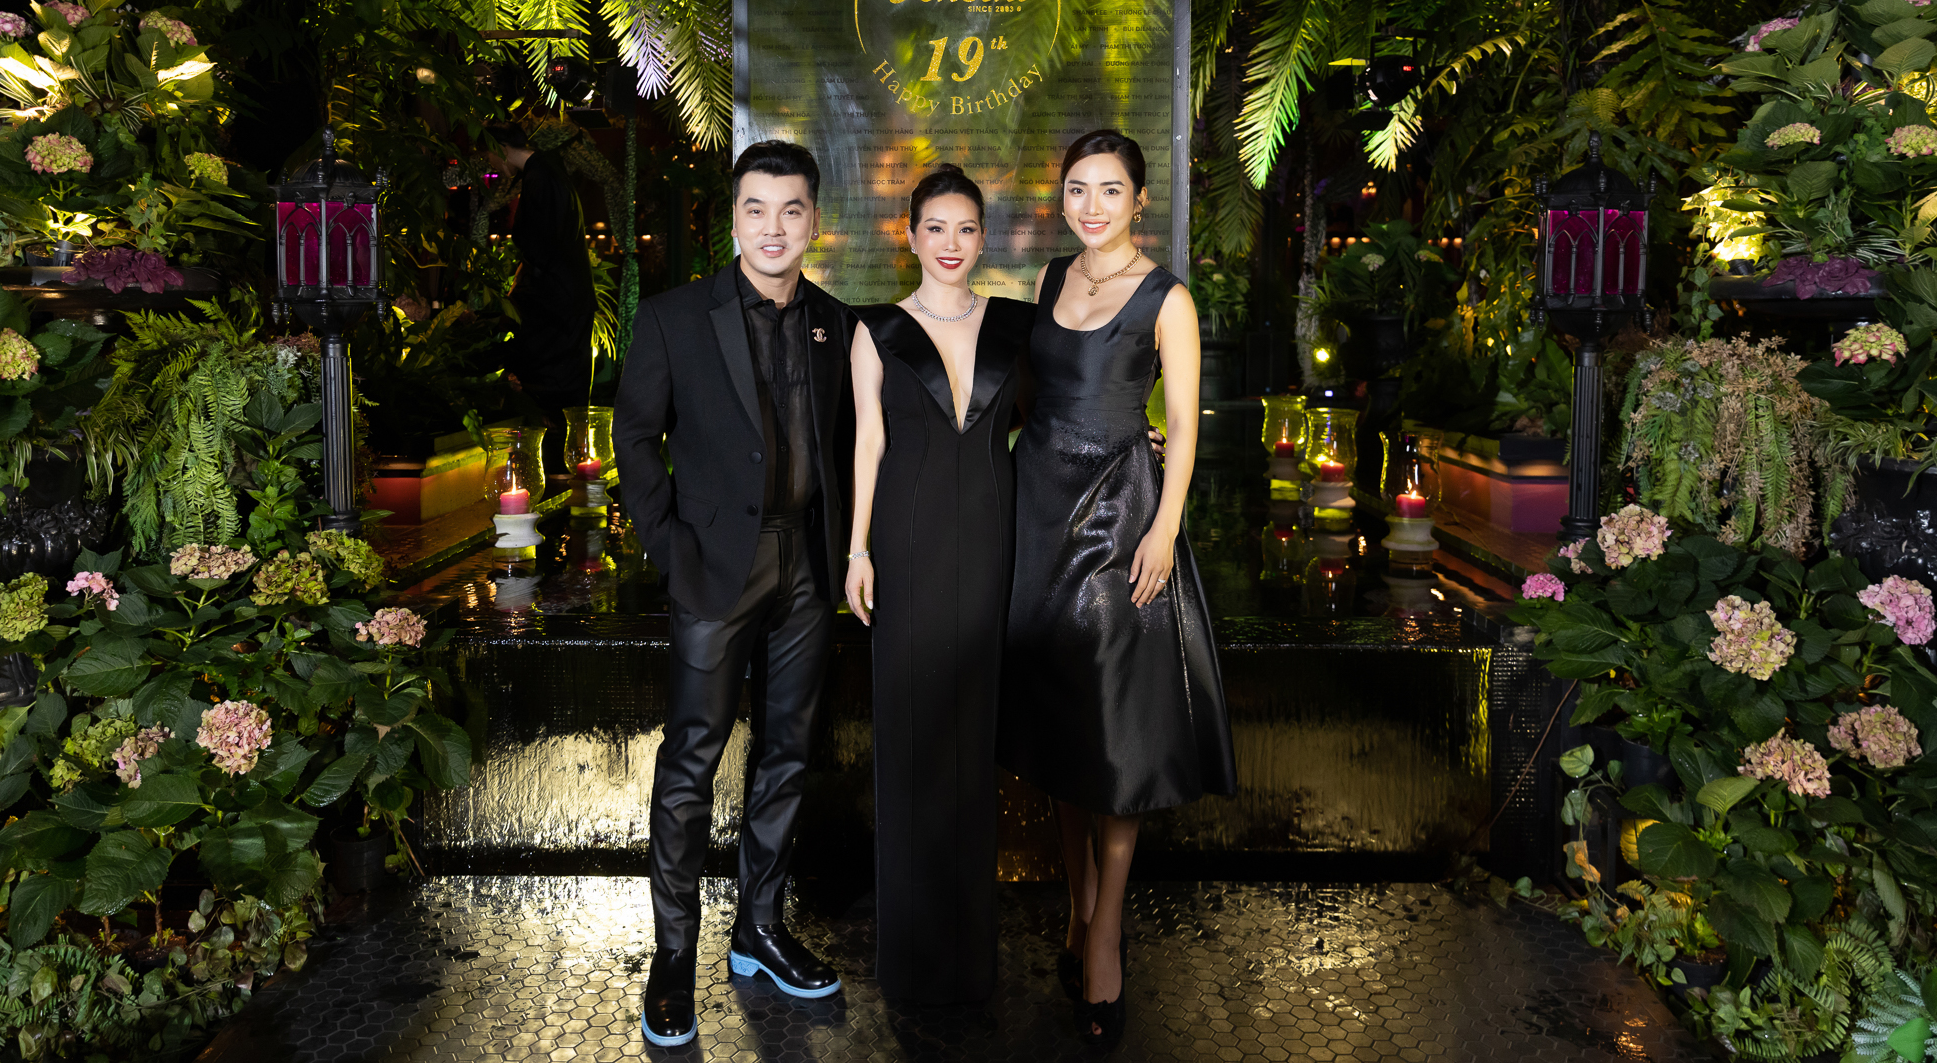 Hoa hậu Thu Hoài cùng chồng doanh nhân dự sự kiện - Ảnh 6.